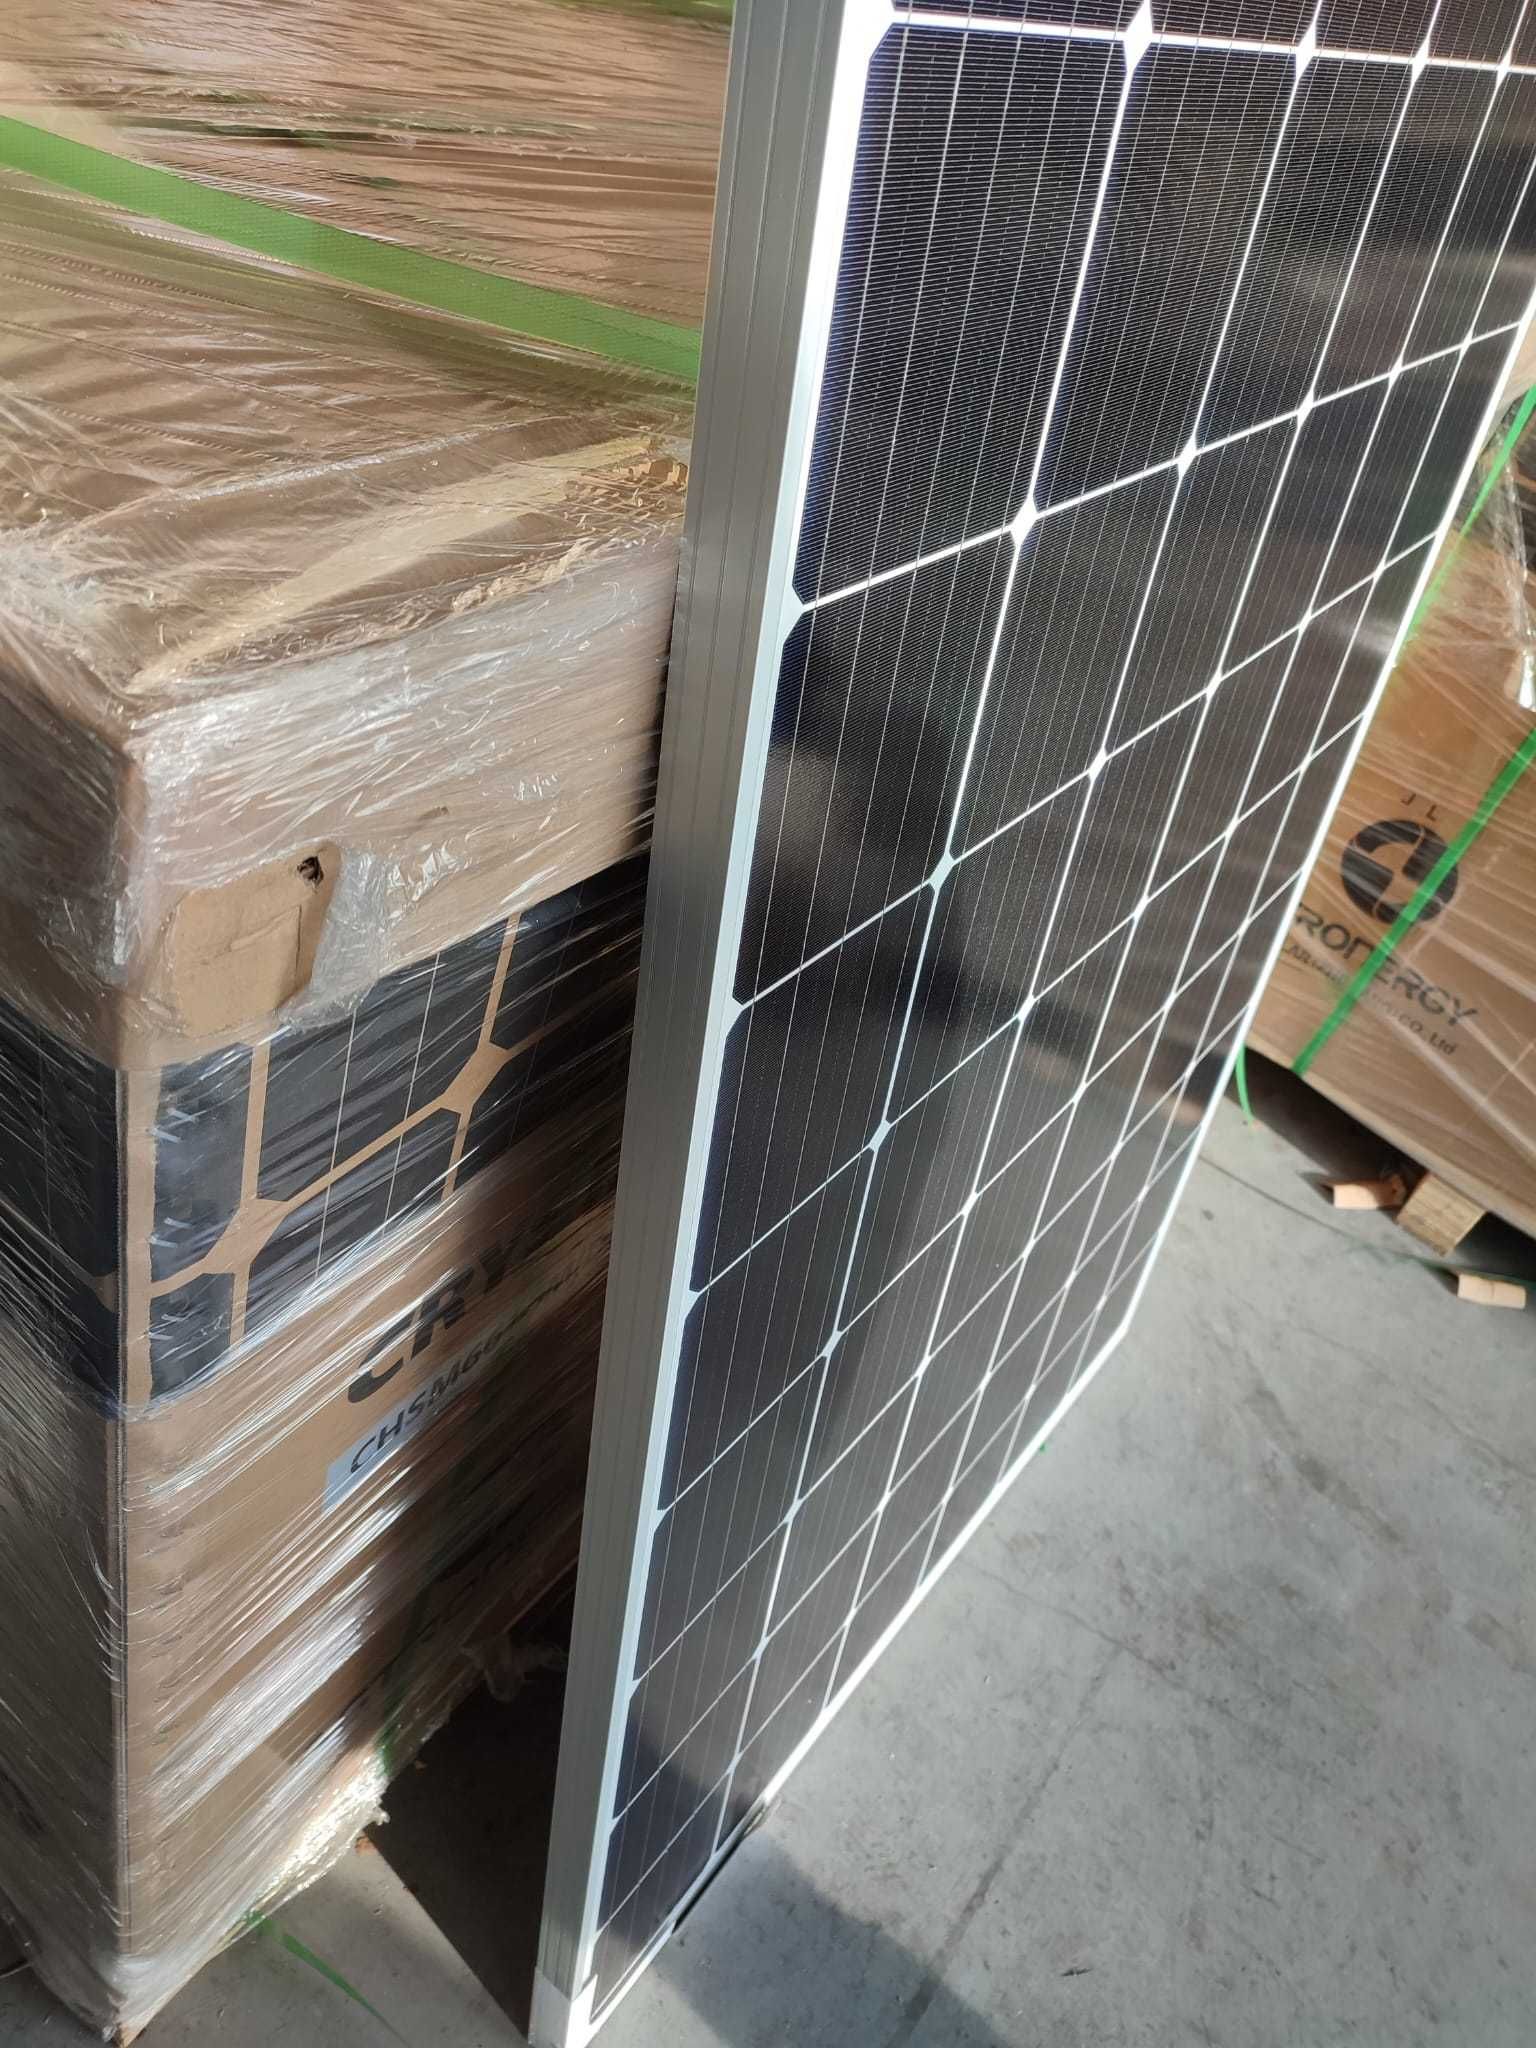 NOWE Panele fotowoltaiczne 310 W solary  OKAZJA